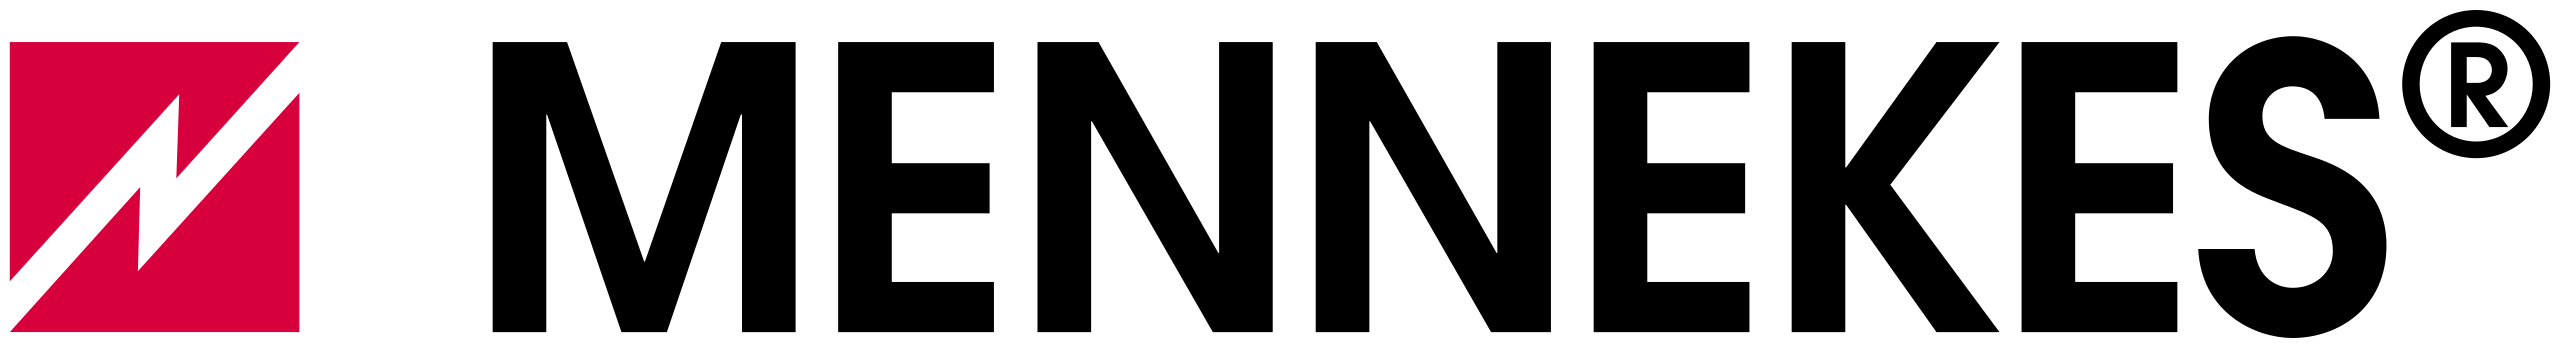 Mennekes logo